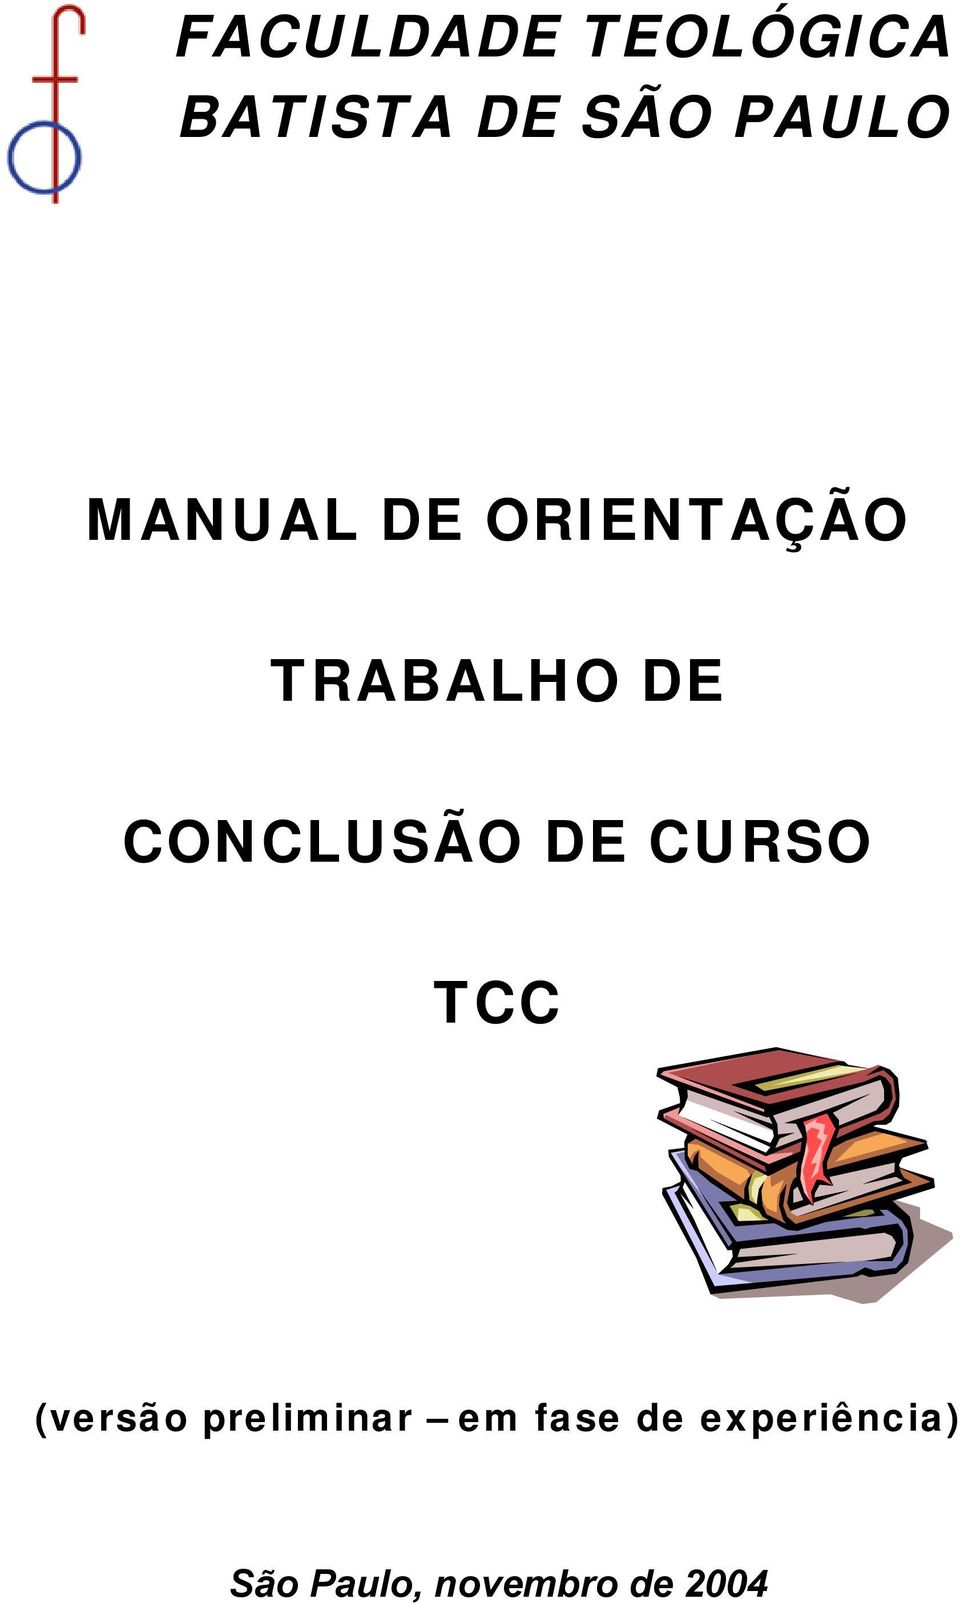 CONCLUSÃO DE CURSO TCC (versão preliminar